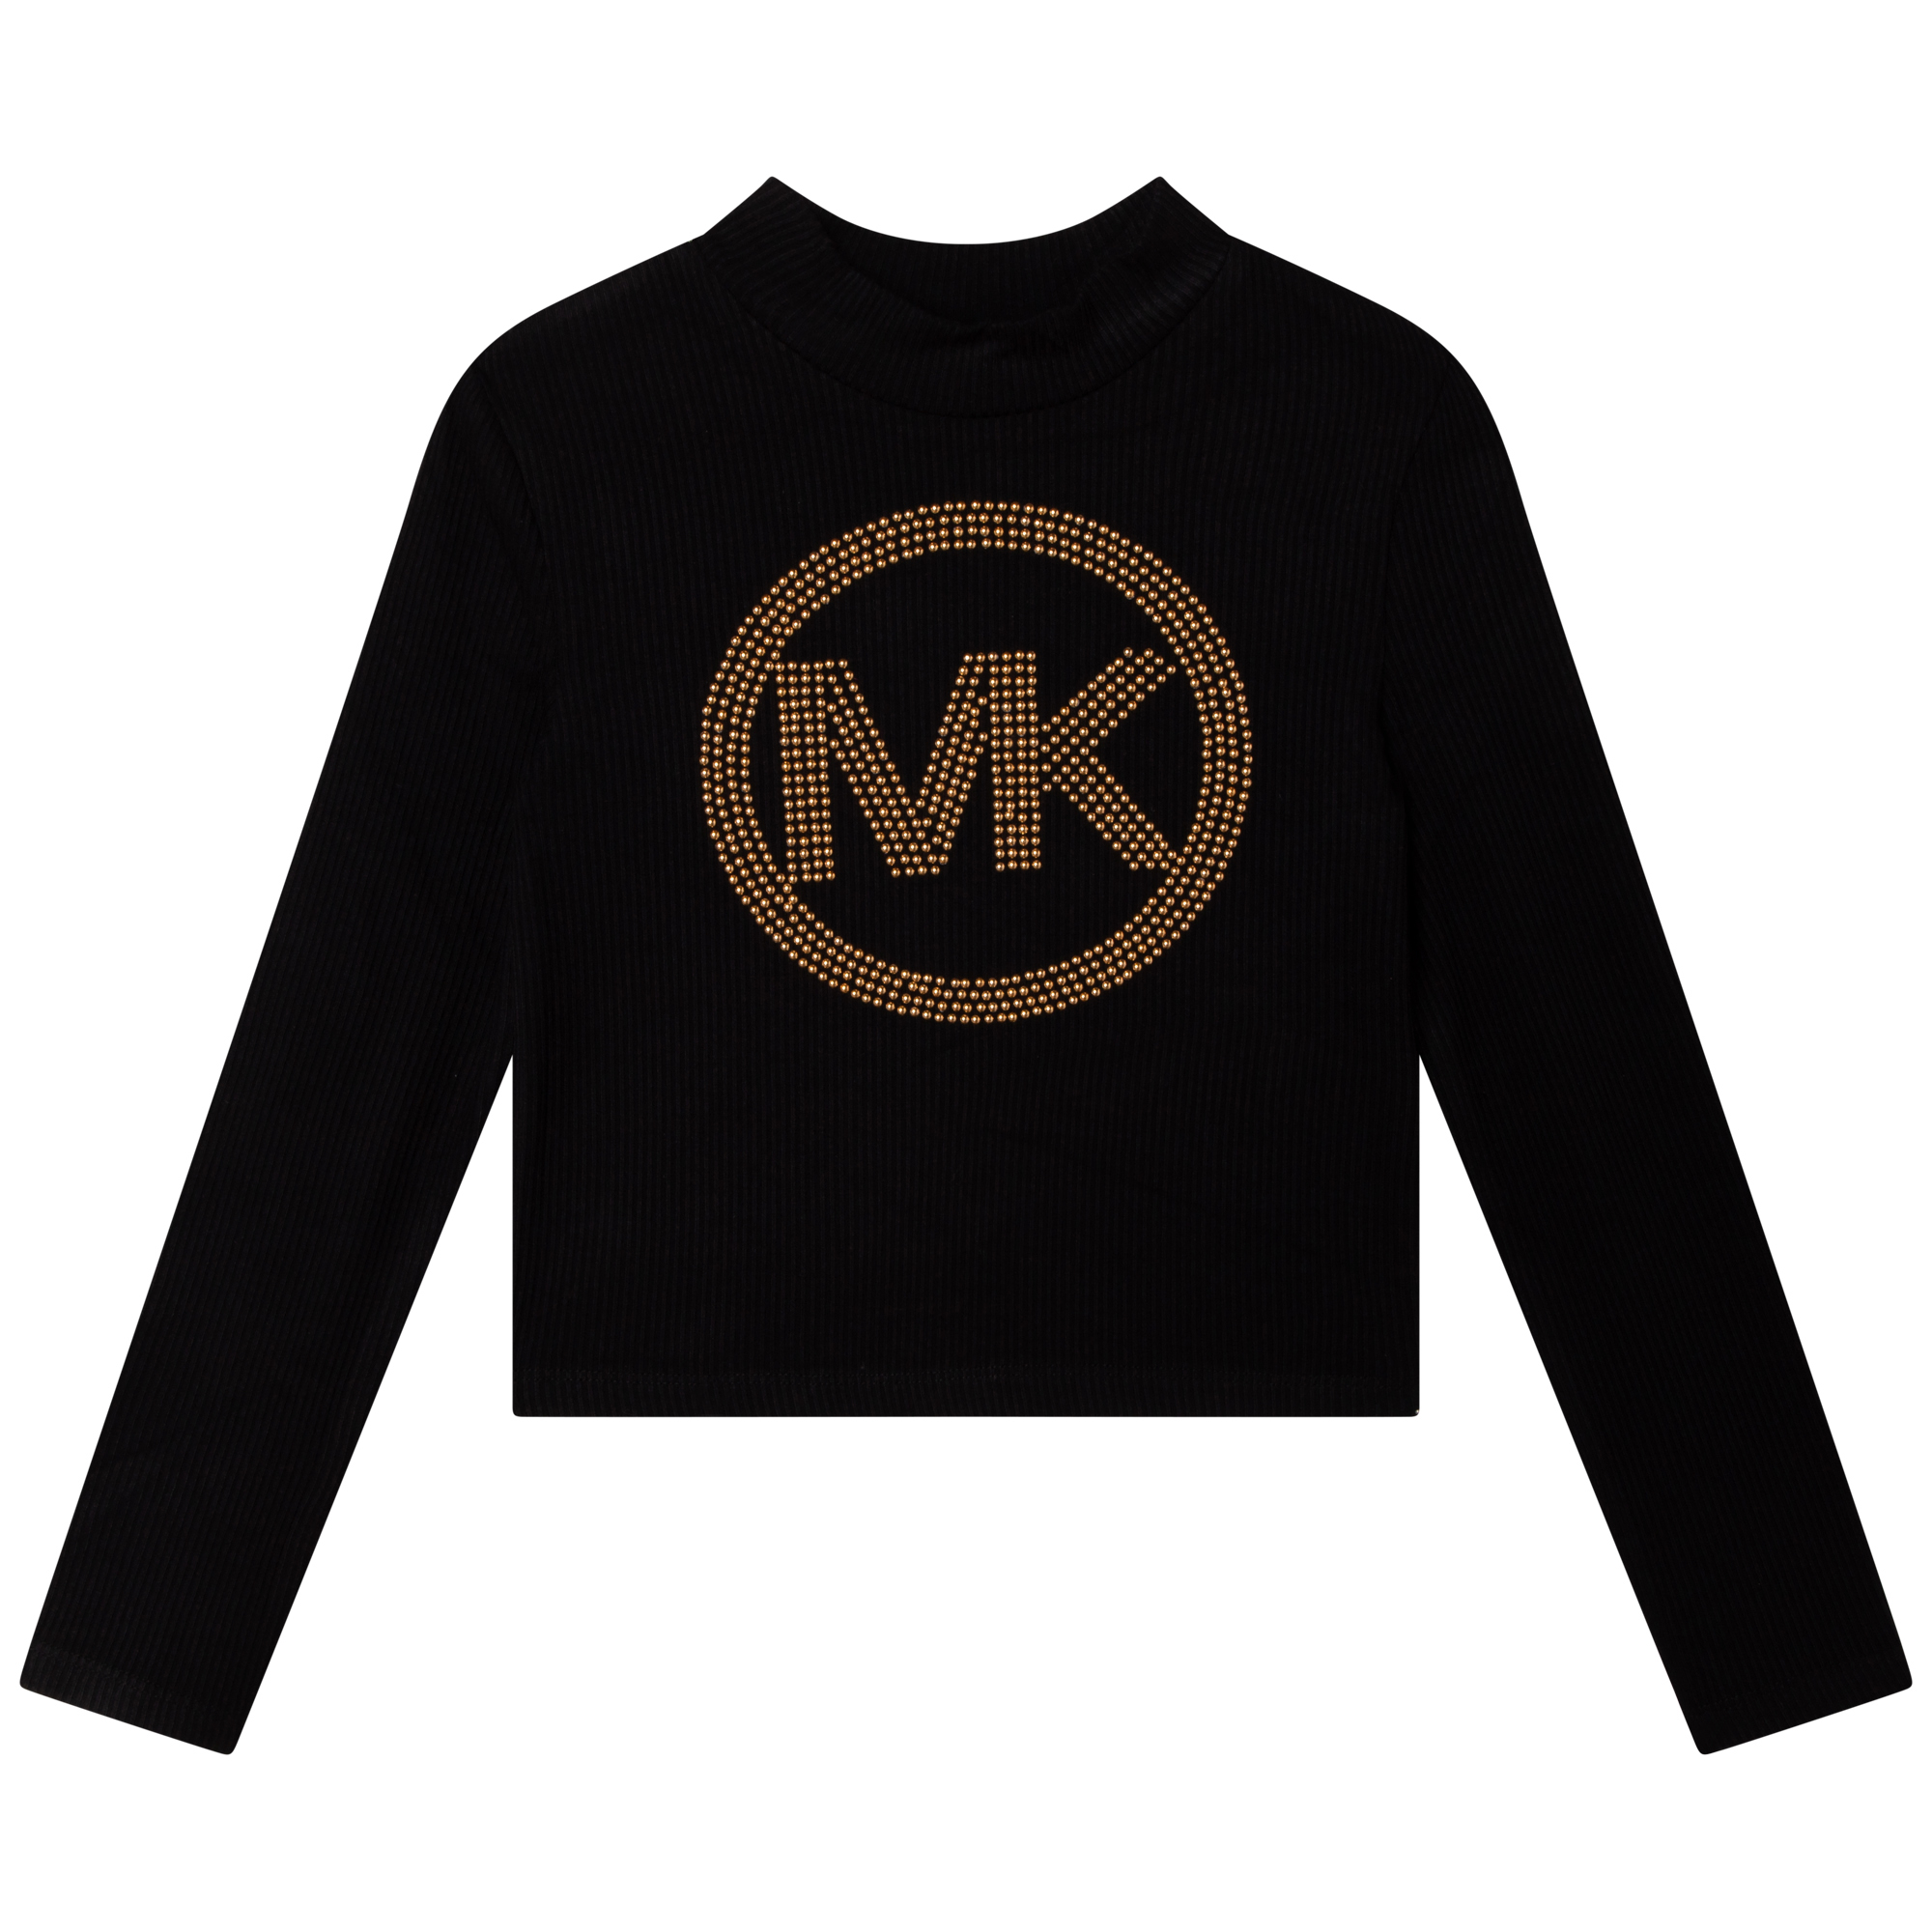 Studded mock-neck T-shirt MICHAEL KORS for GIRL